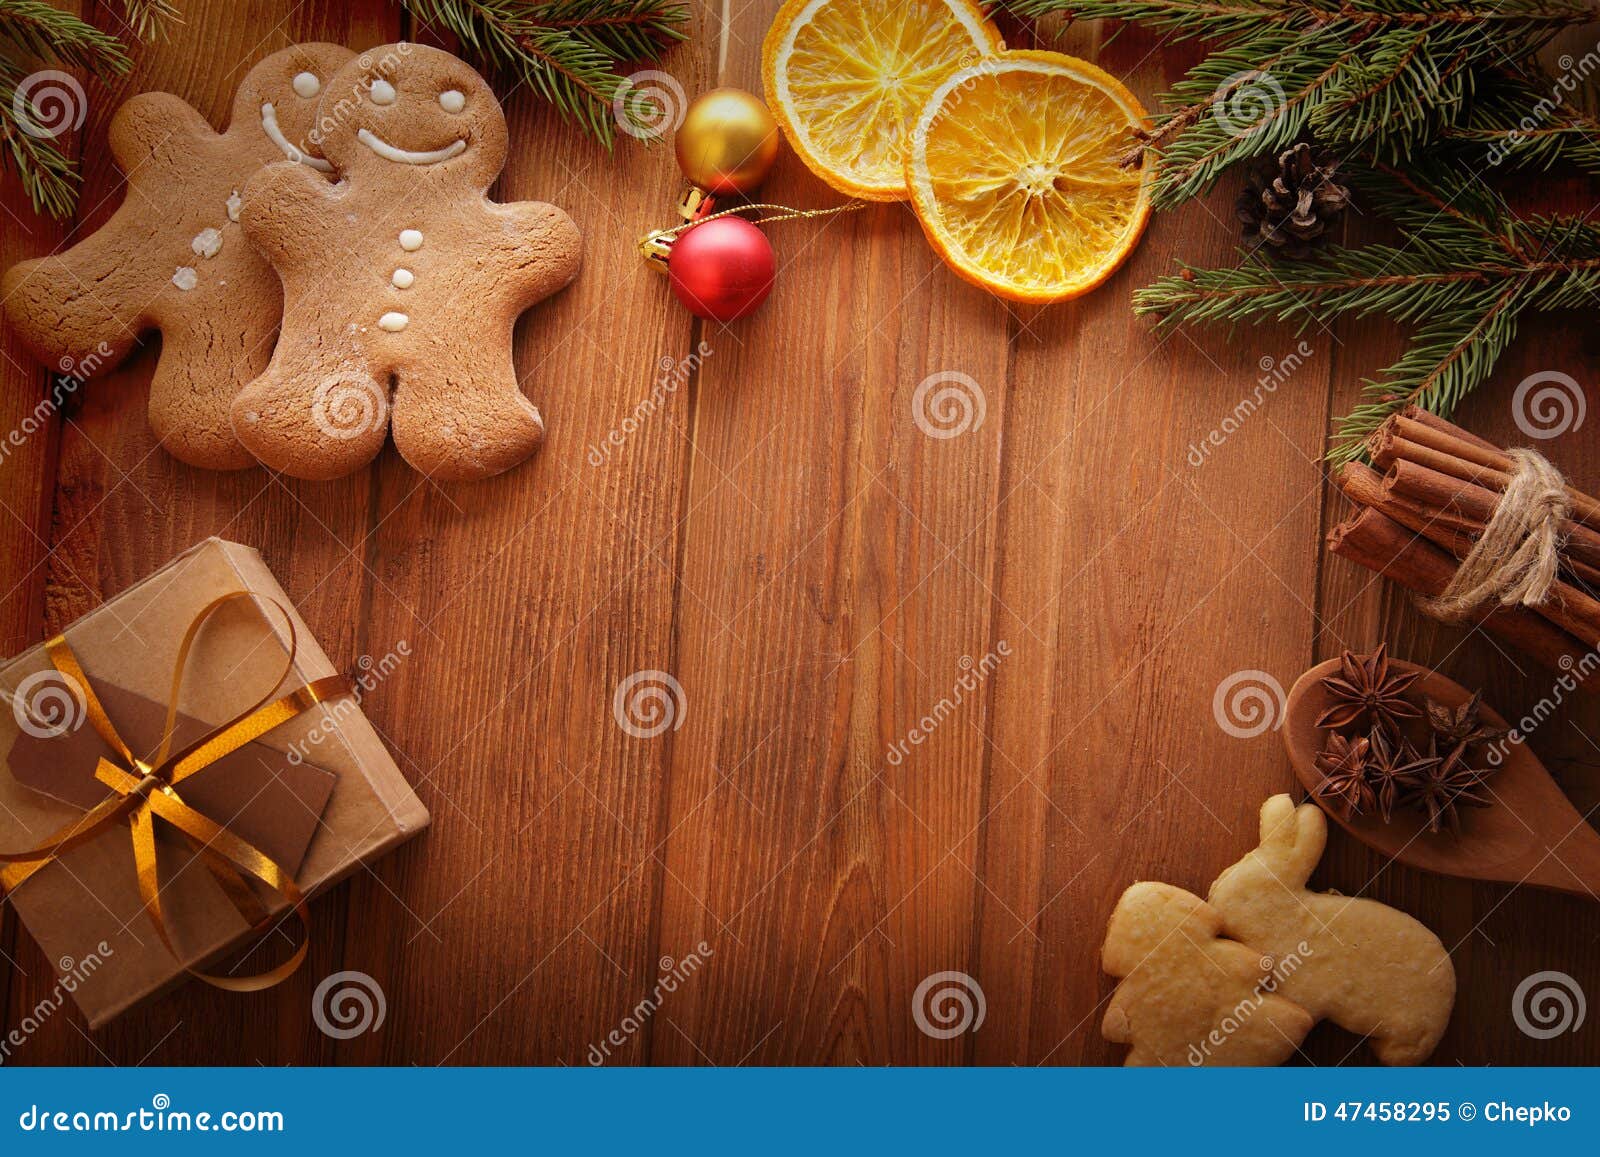 姜饼圣诞树和礼物在桌上. Gingerbread Christmas tree and gifts on wooden table